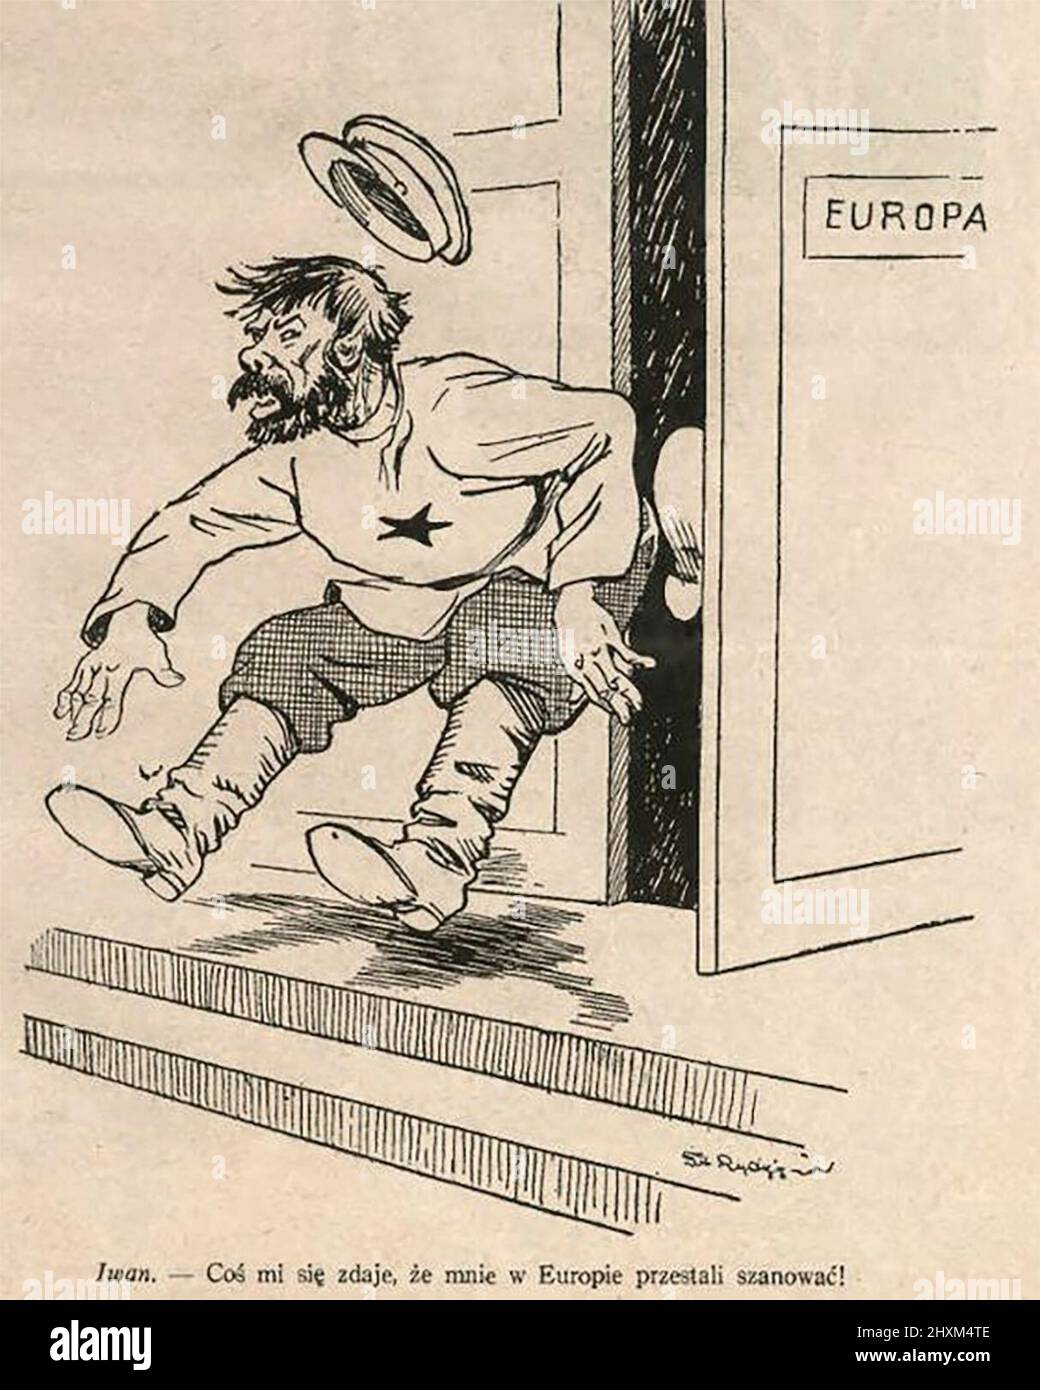 « Ivan » est expulsé de la porte de l'Europe - une caricature consacrée à l'Accord de Munich de 1938 exprime l'idée que la Russie était étrangère à la civilisation européenne - caricature politique, 1938 Banque D'Images